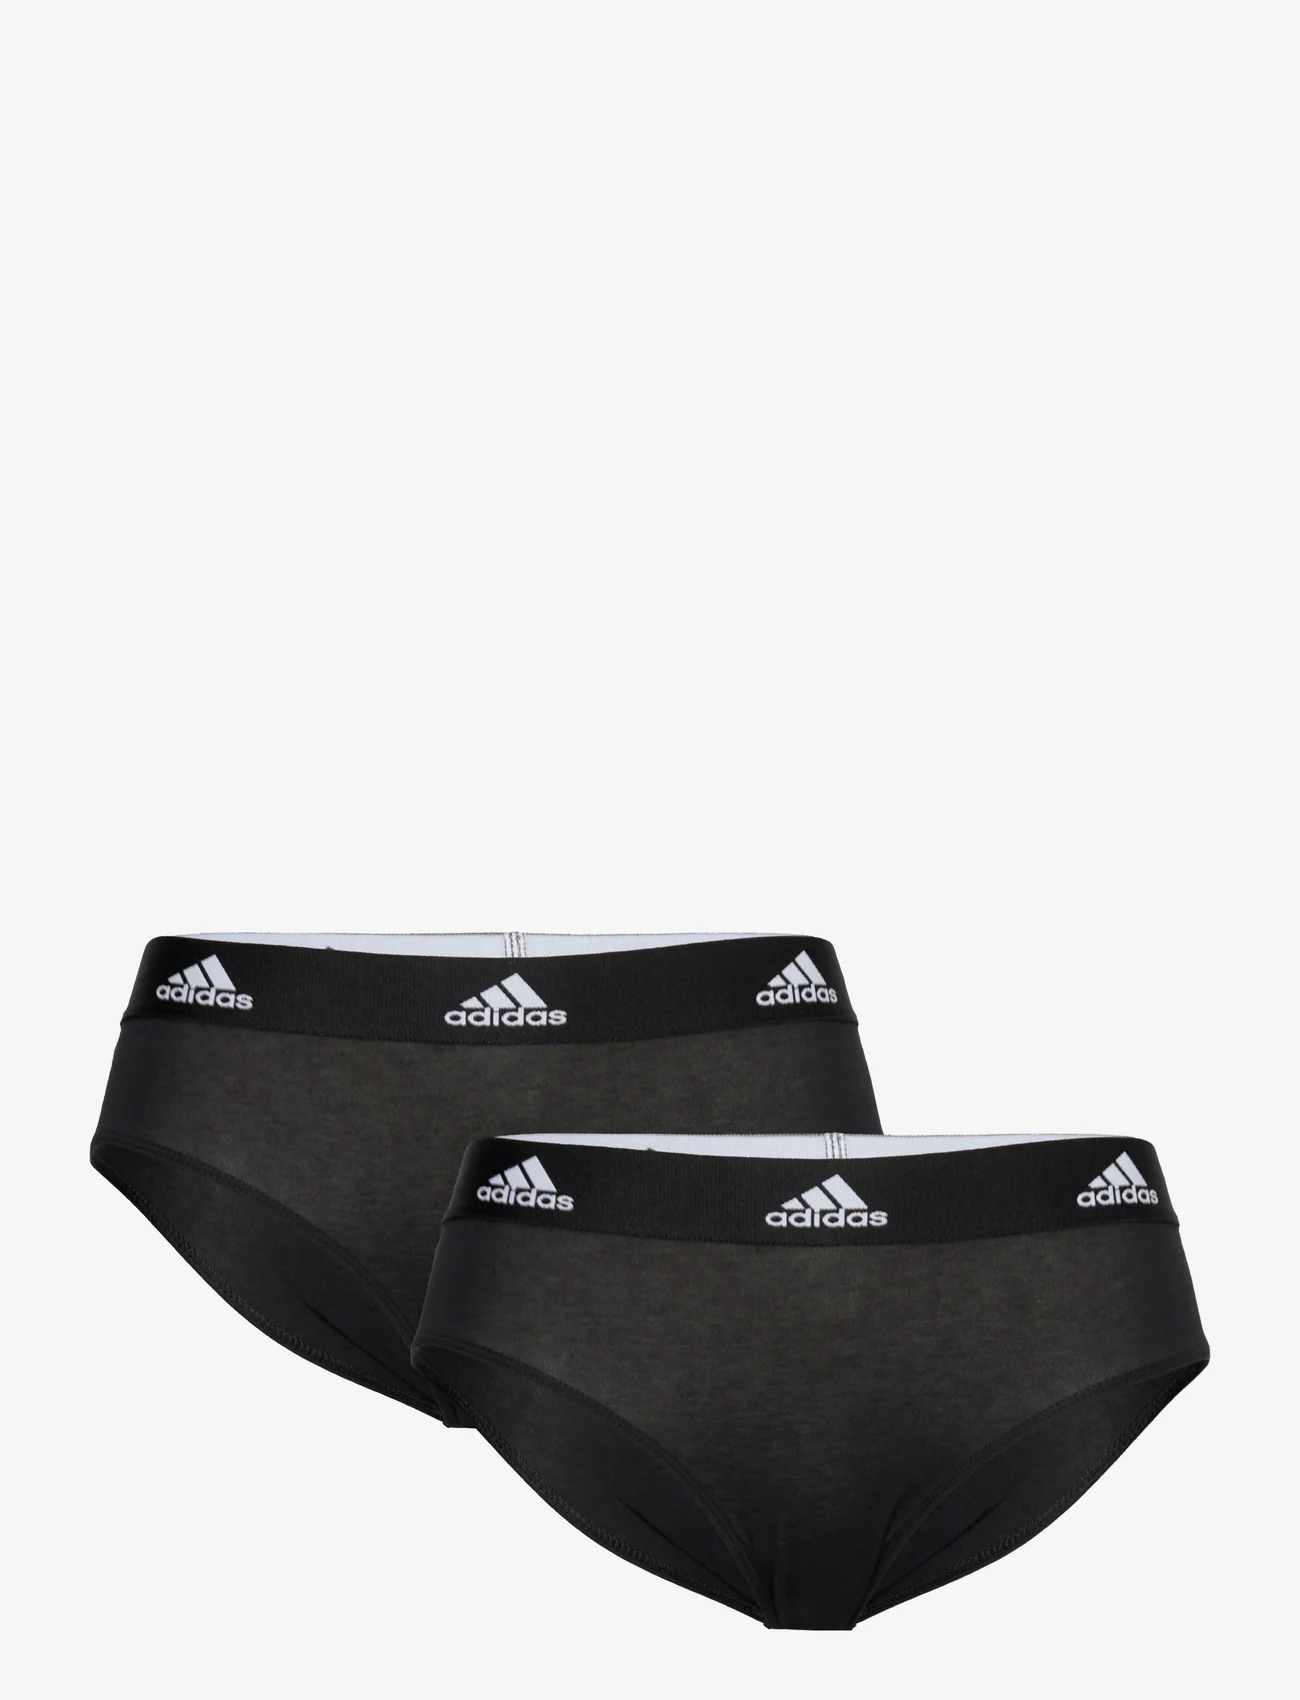 adidas Underwear - Brief - die niedrigsten preise - black - 0